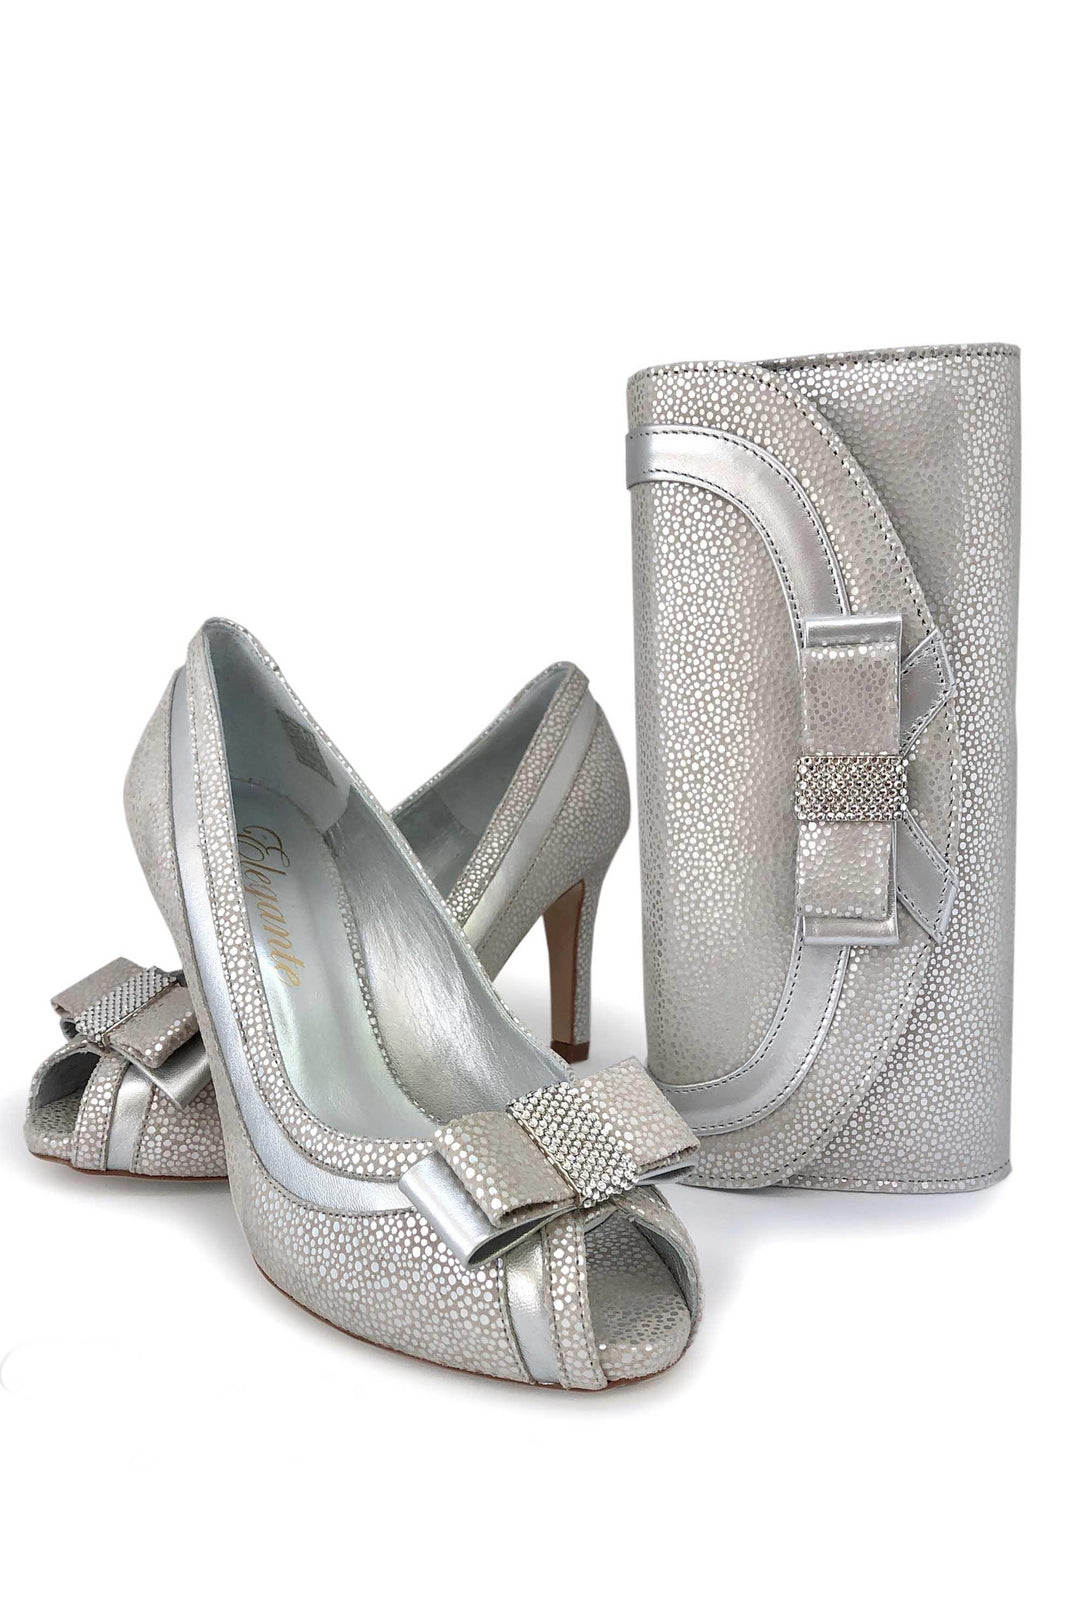 Elegante Luciana Corella Shoe and Bag Set Silver - Shoes and Bags Accessories, Bag, Elegante, Shoes, Silver, Special Occasion ginasmartboutique